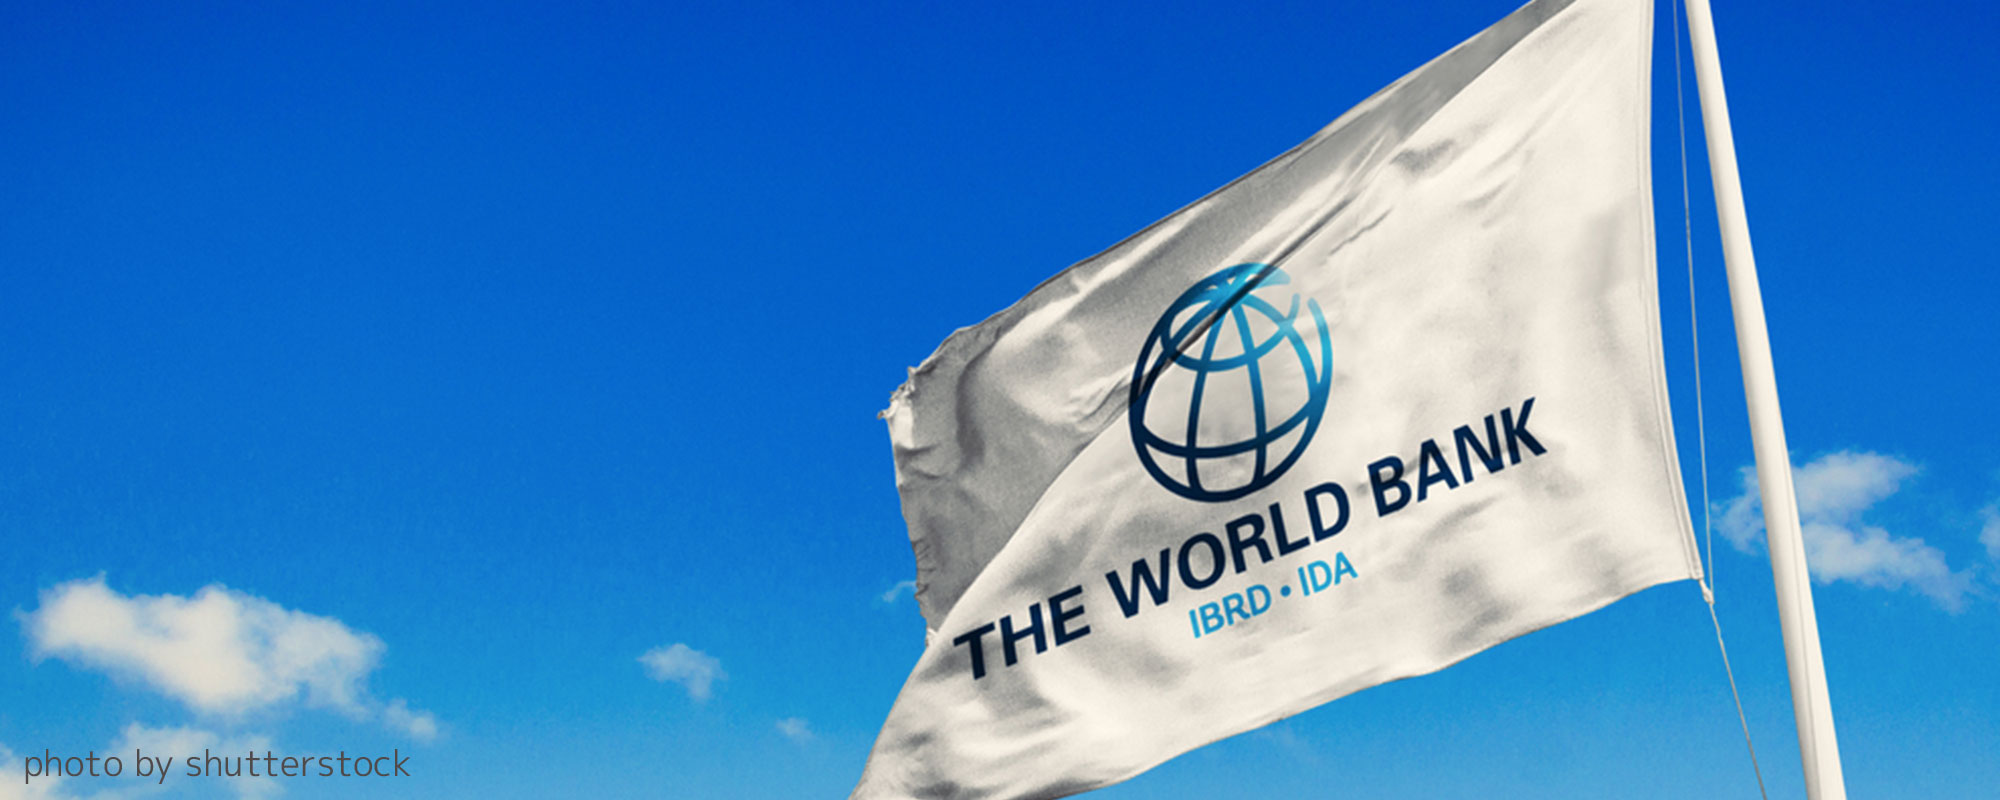 世界銀行の旗